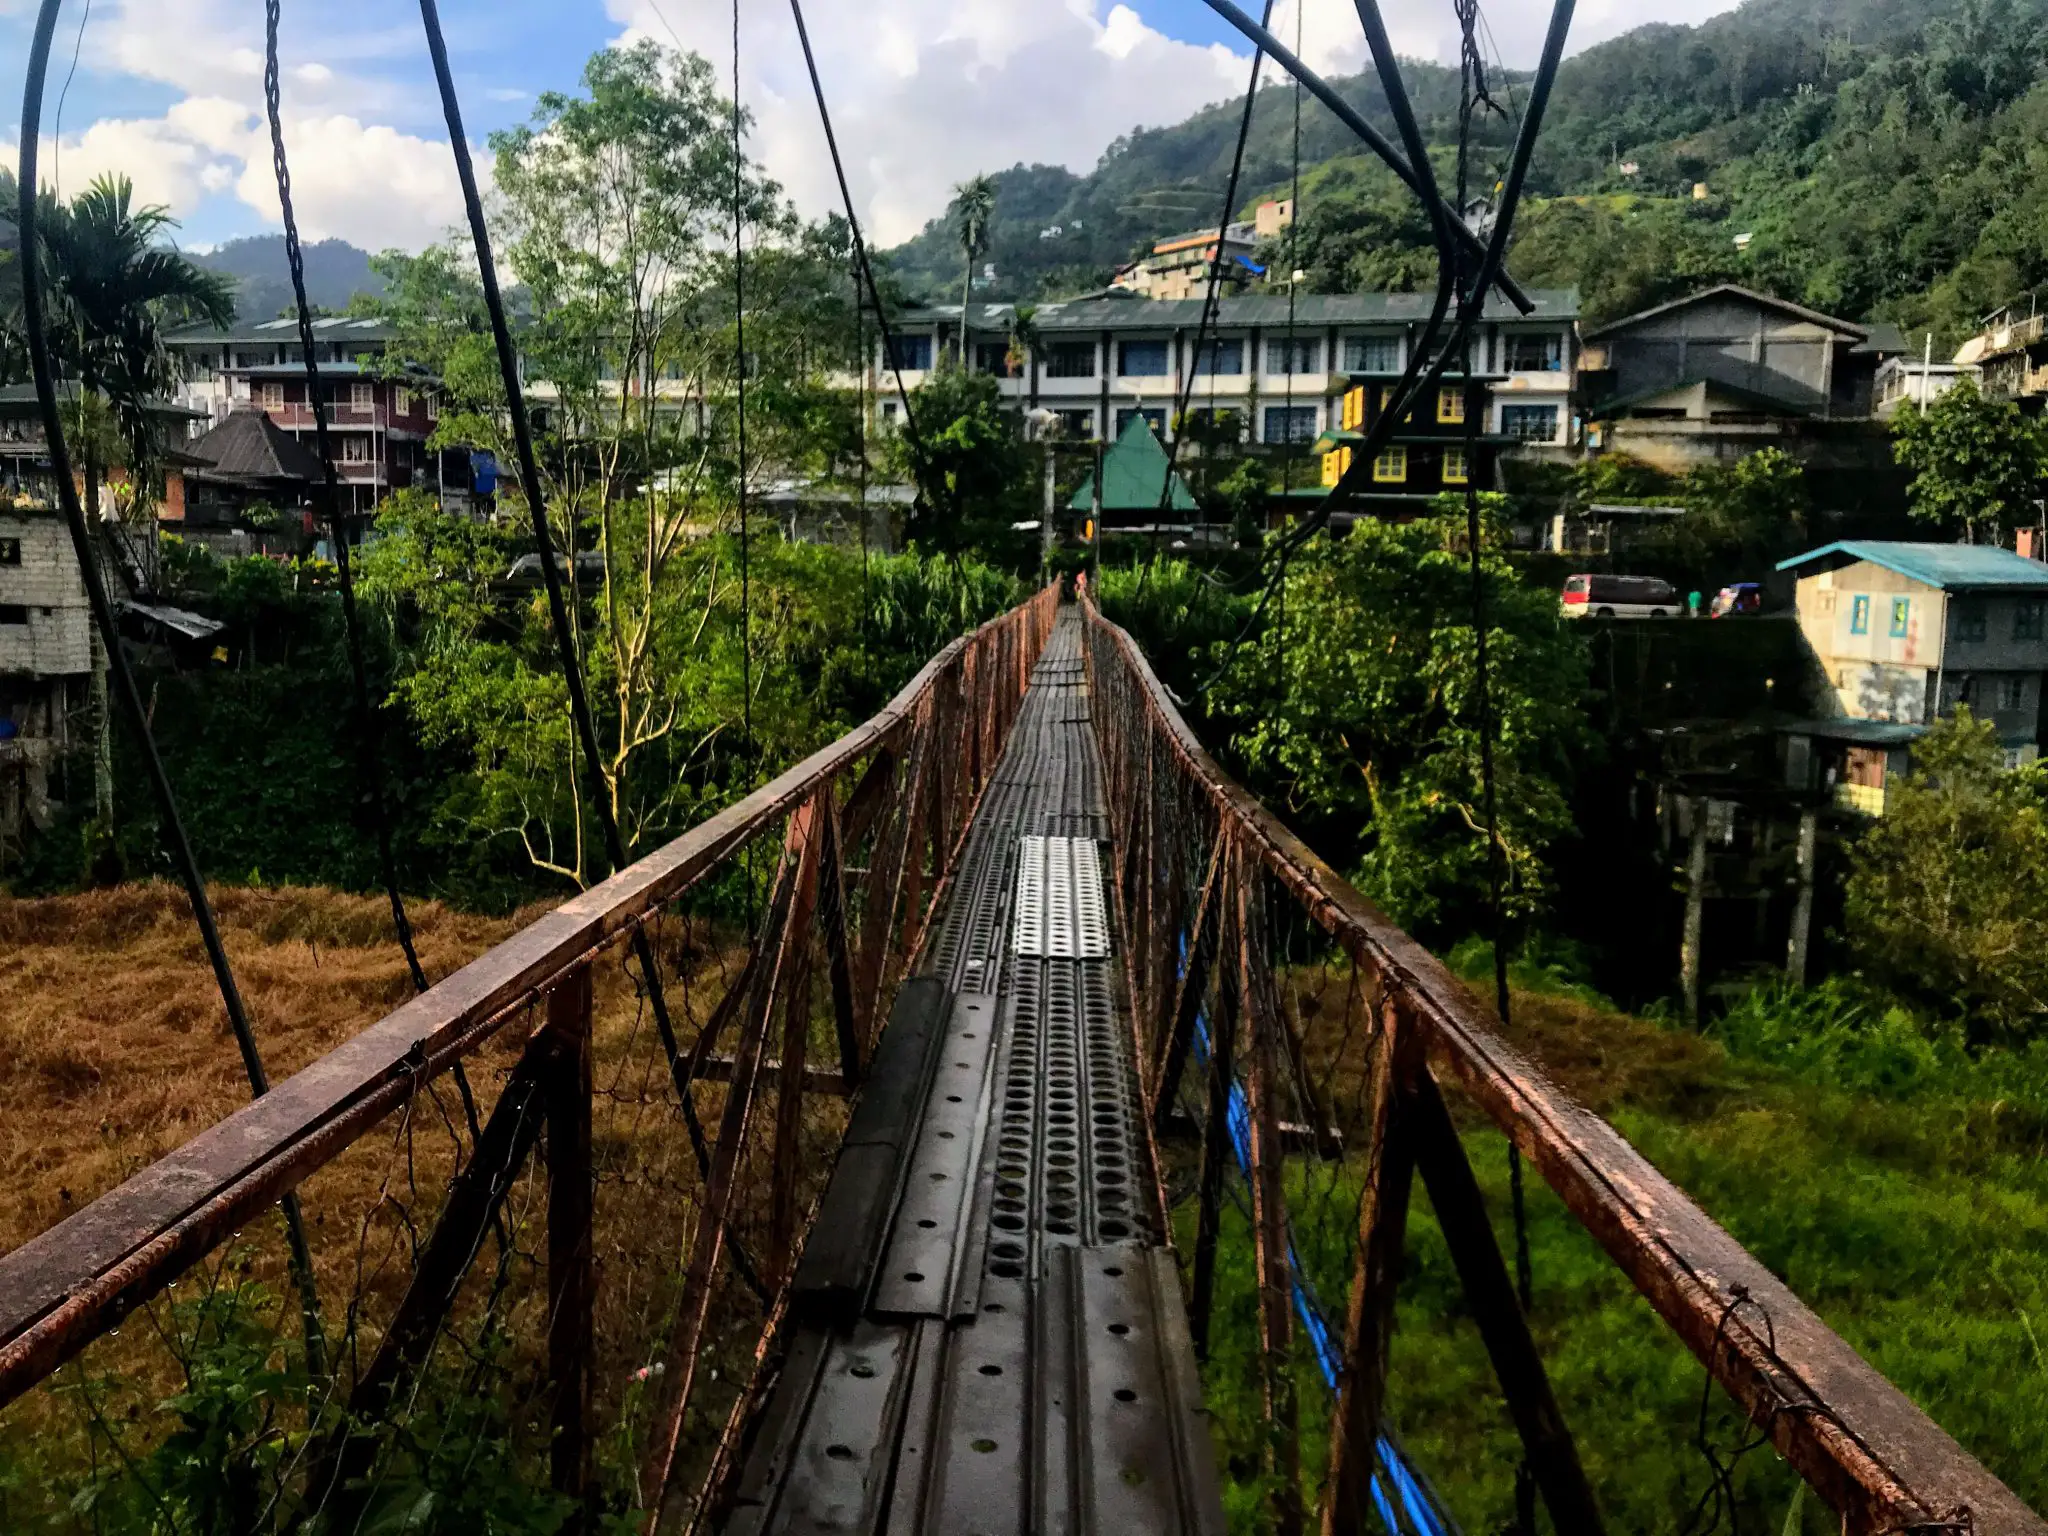 Suspension bridge, Banaue, Philippines